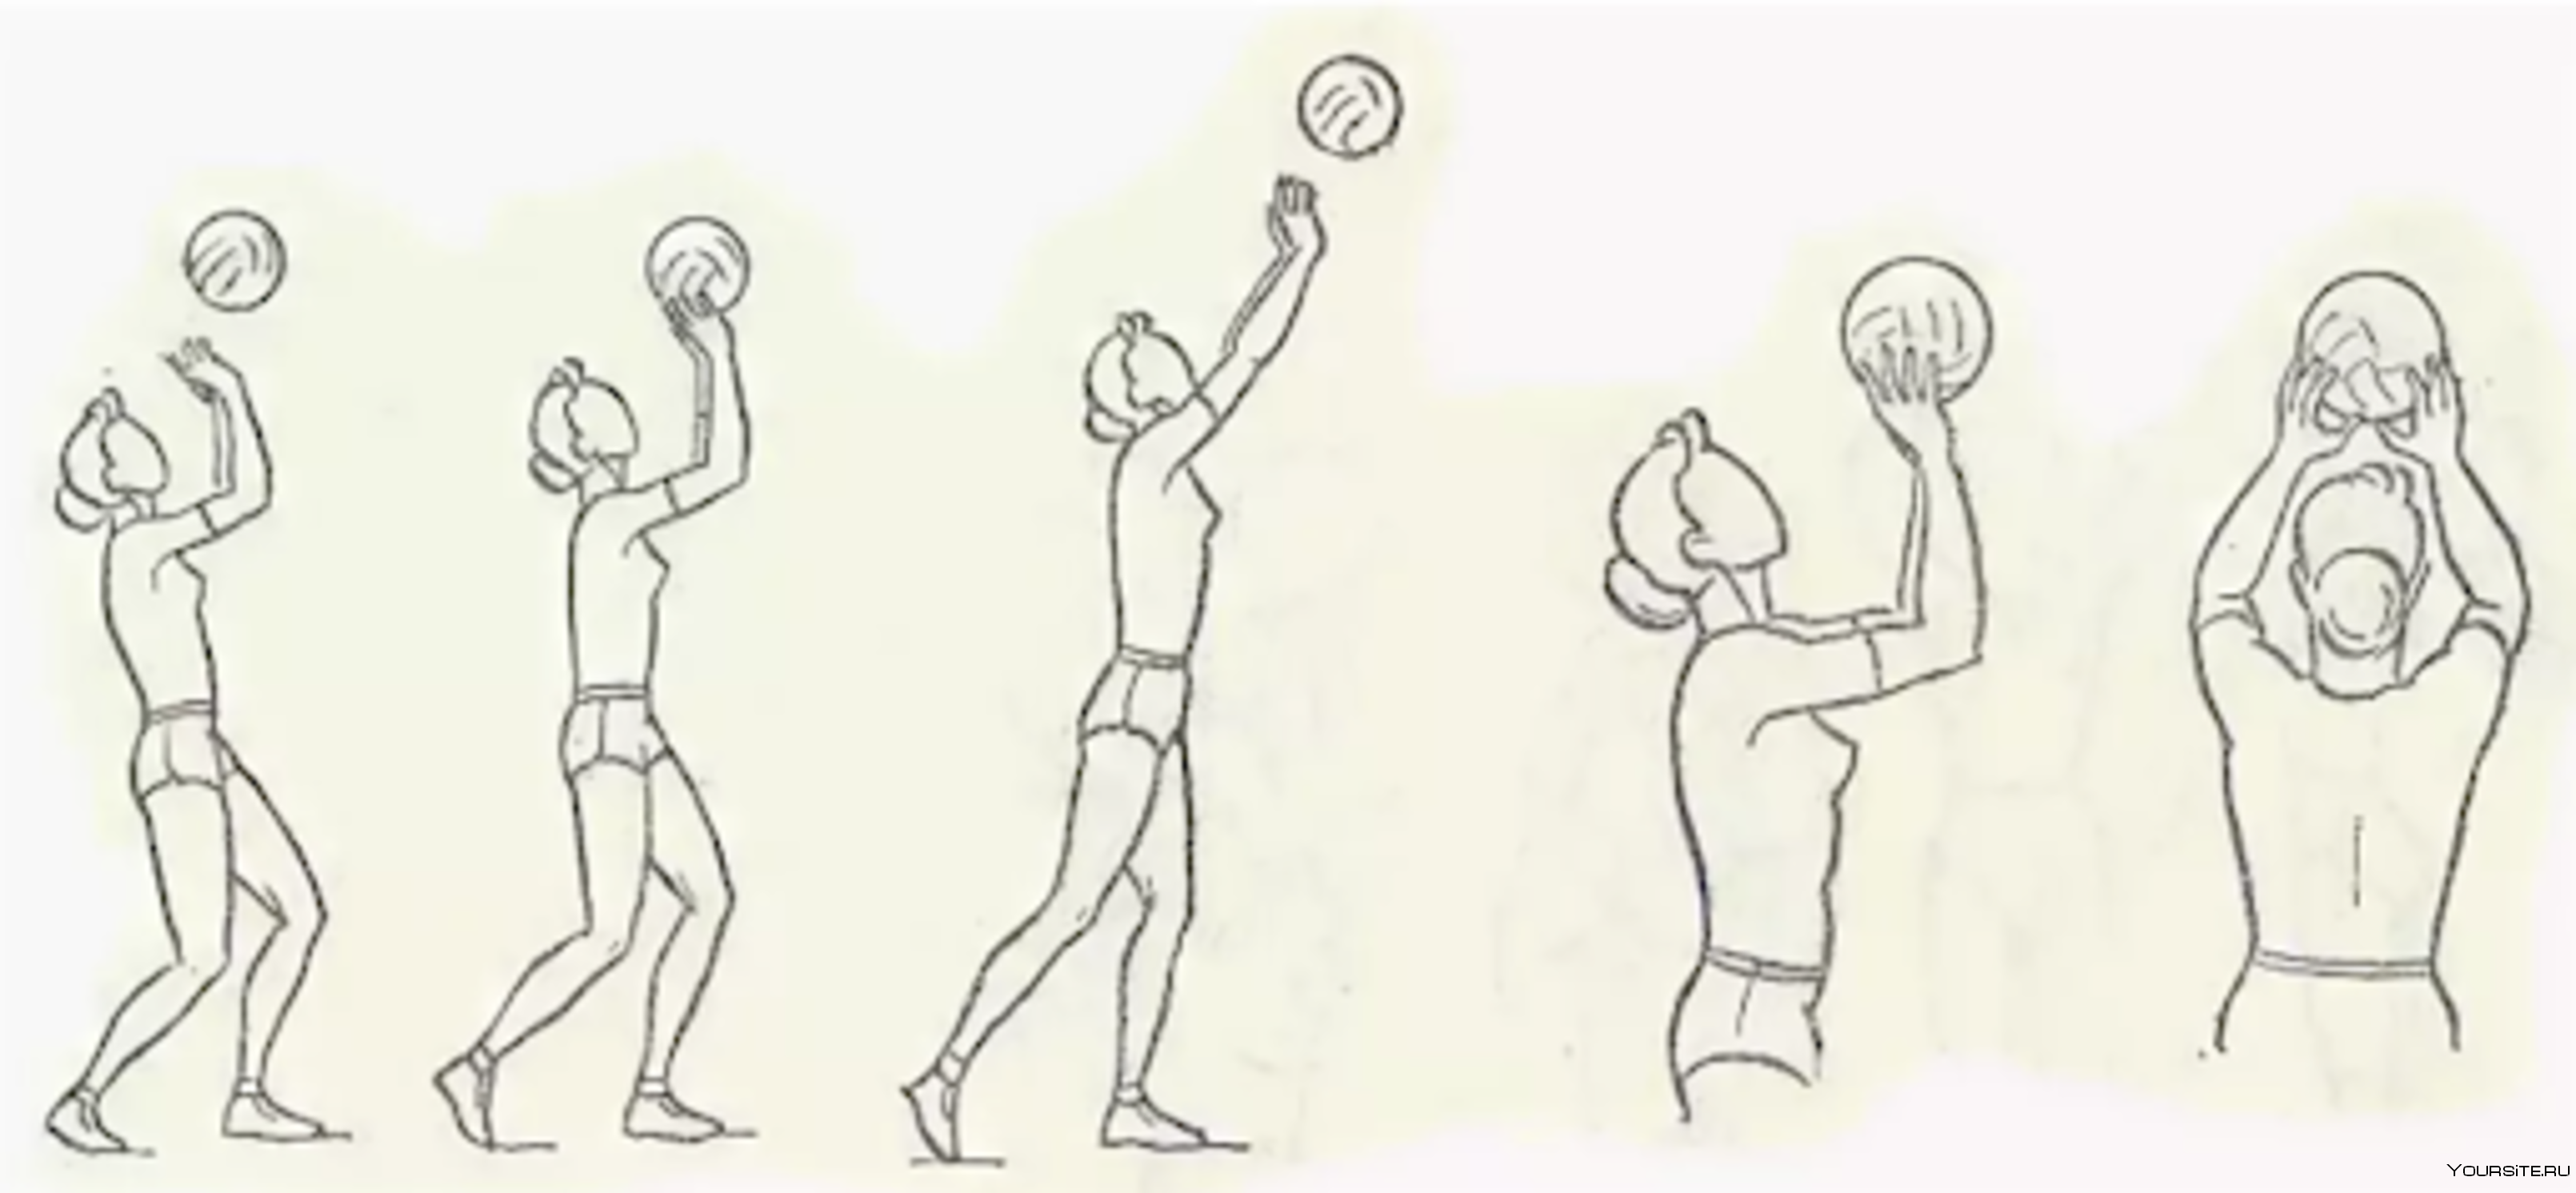 Элементы волейбола передачи. Передача мяча 2 руками сверху в волейболе. Техника передачи мяча двумя руками сверху в волейболе. Техника приема и передачи мяча сверху двумя руками в волейболе. Передача двумя руками сверху в волейболе.